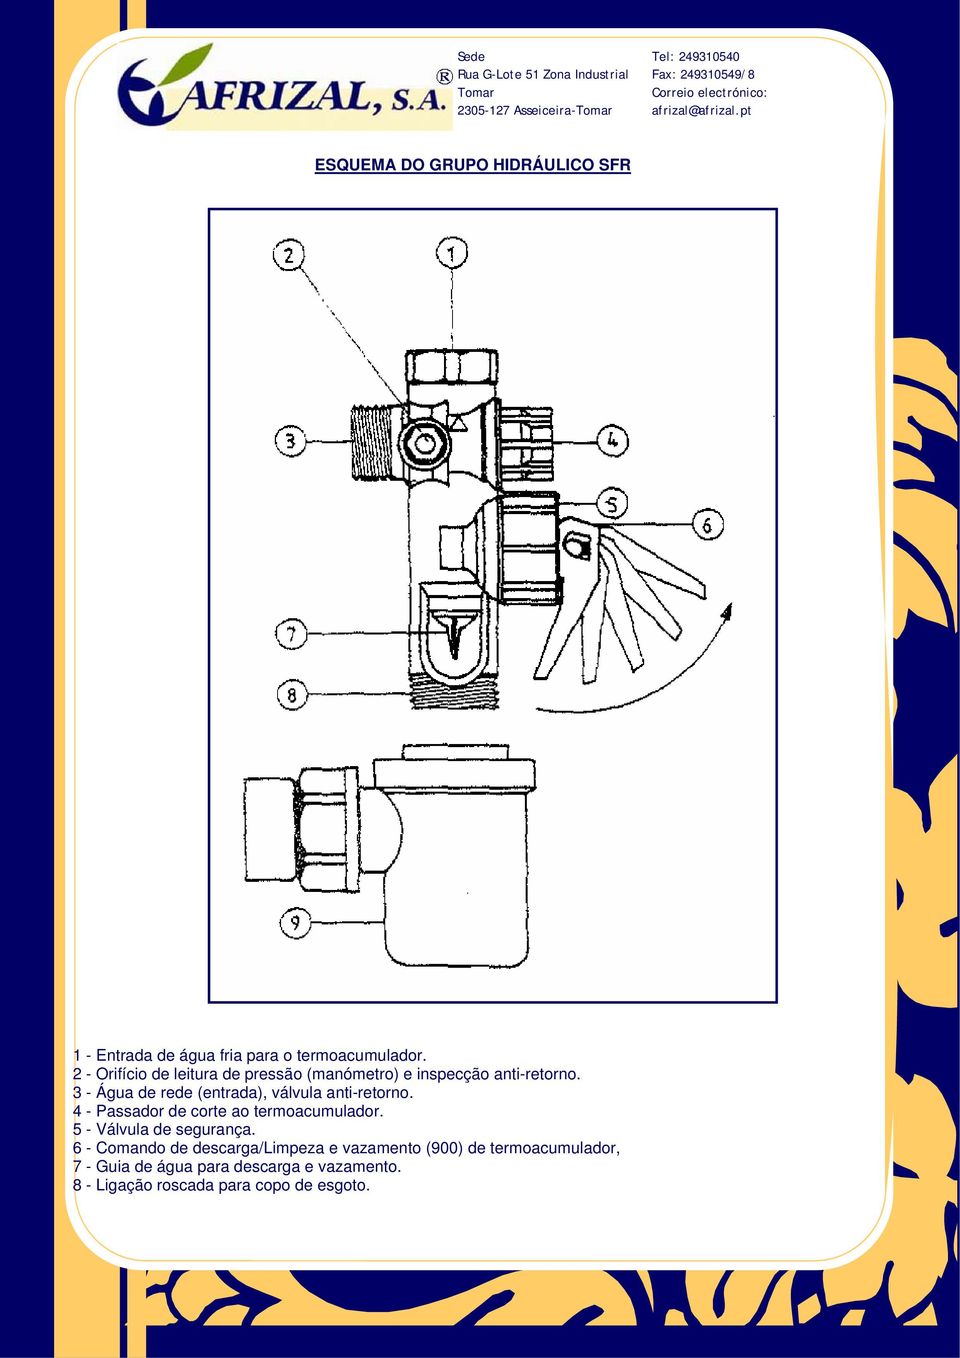 3 - Água de rede (entrada), válvula anti-retorno. 4 - Passador de corte ao termoacumulador.